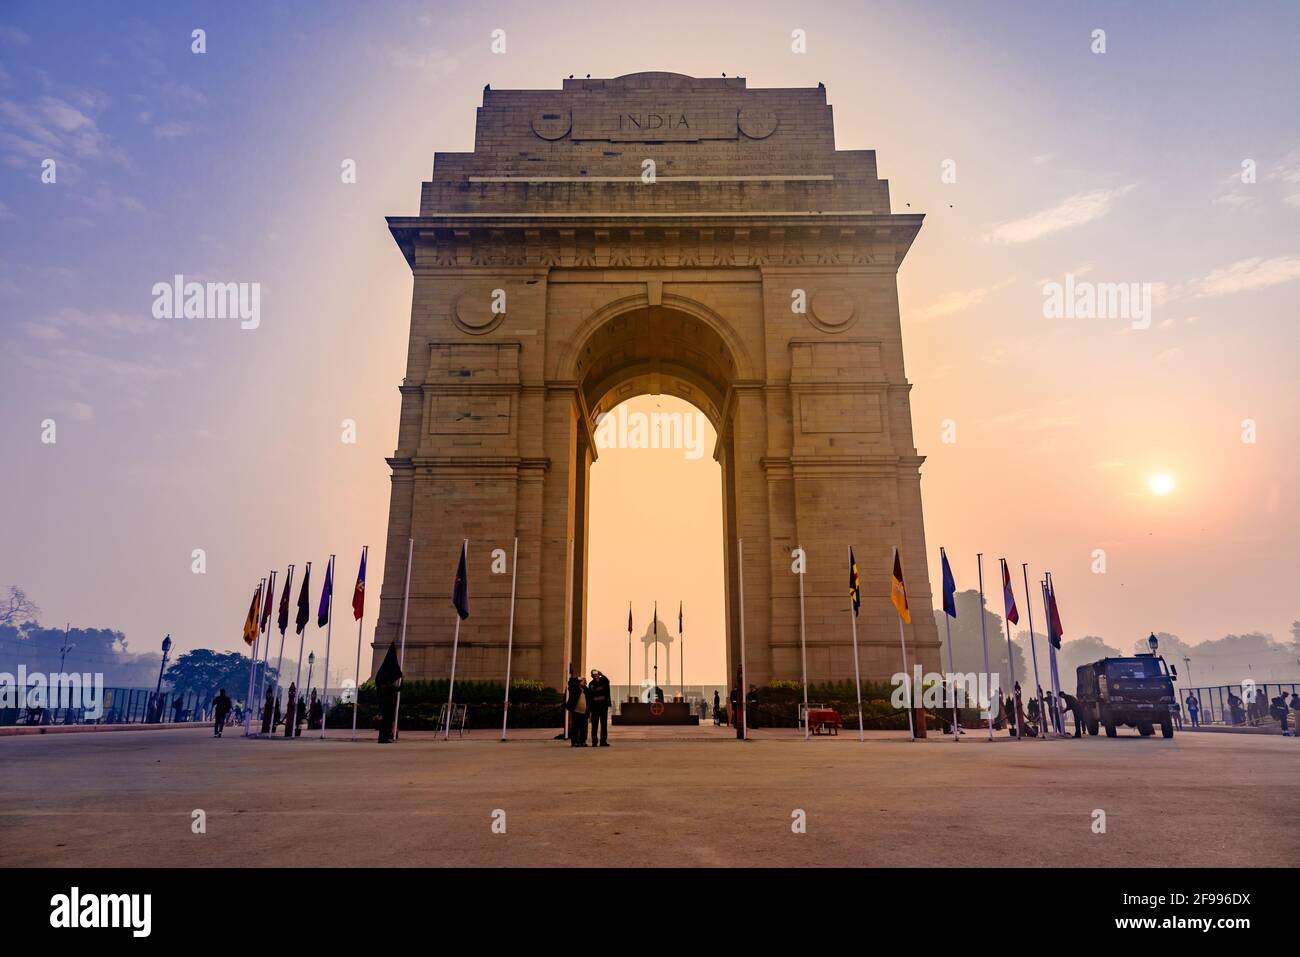 India Gate, New Delhi, marzo-2019: È un monumento di guerra in stile architettonico ad arco trionfale progettato da Sir Edwin Lutyens a 82,000 soldati dell'Ind Foto Stock